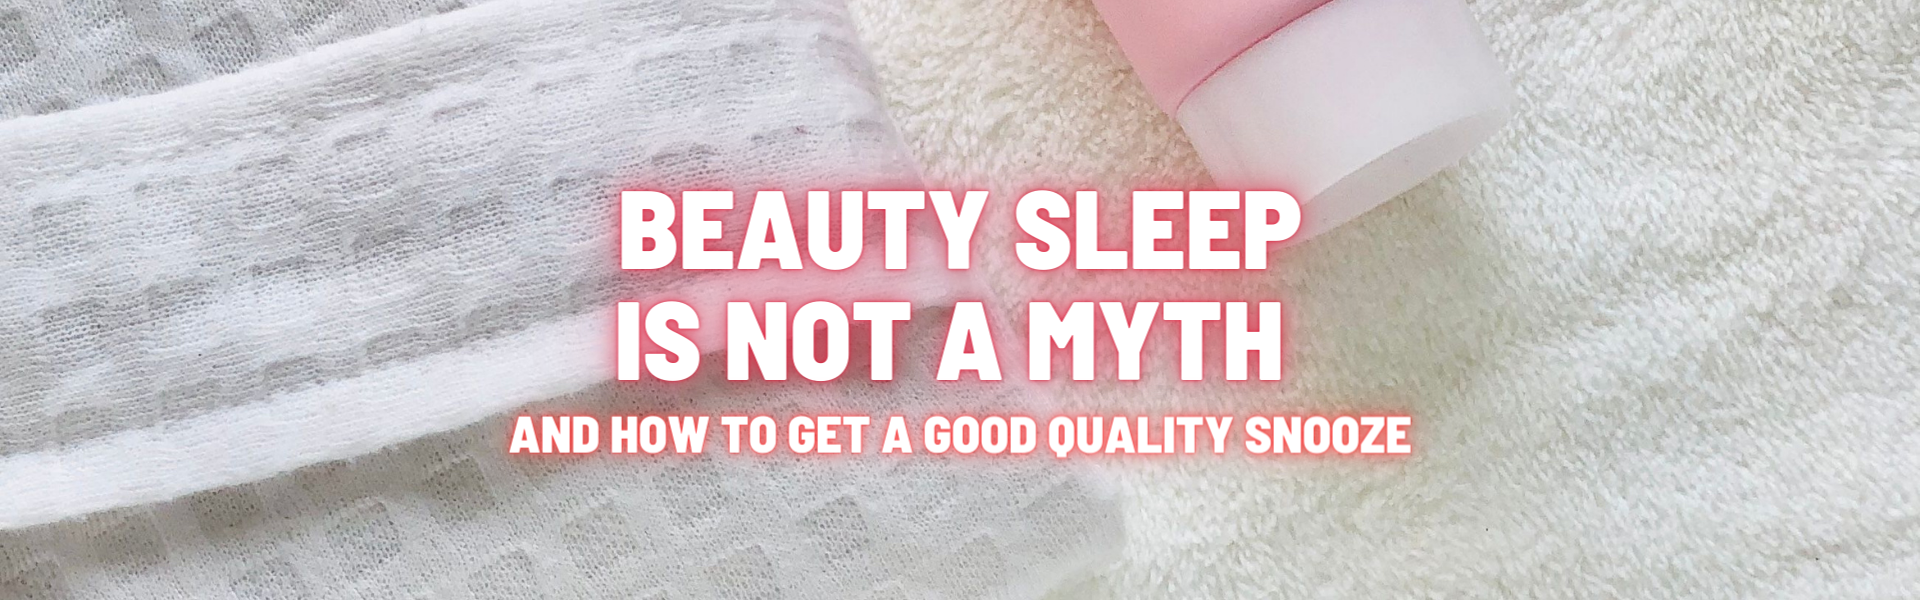 Beauty Sleep is not a MYTH!